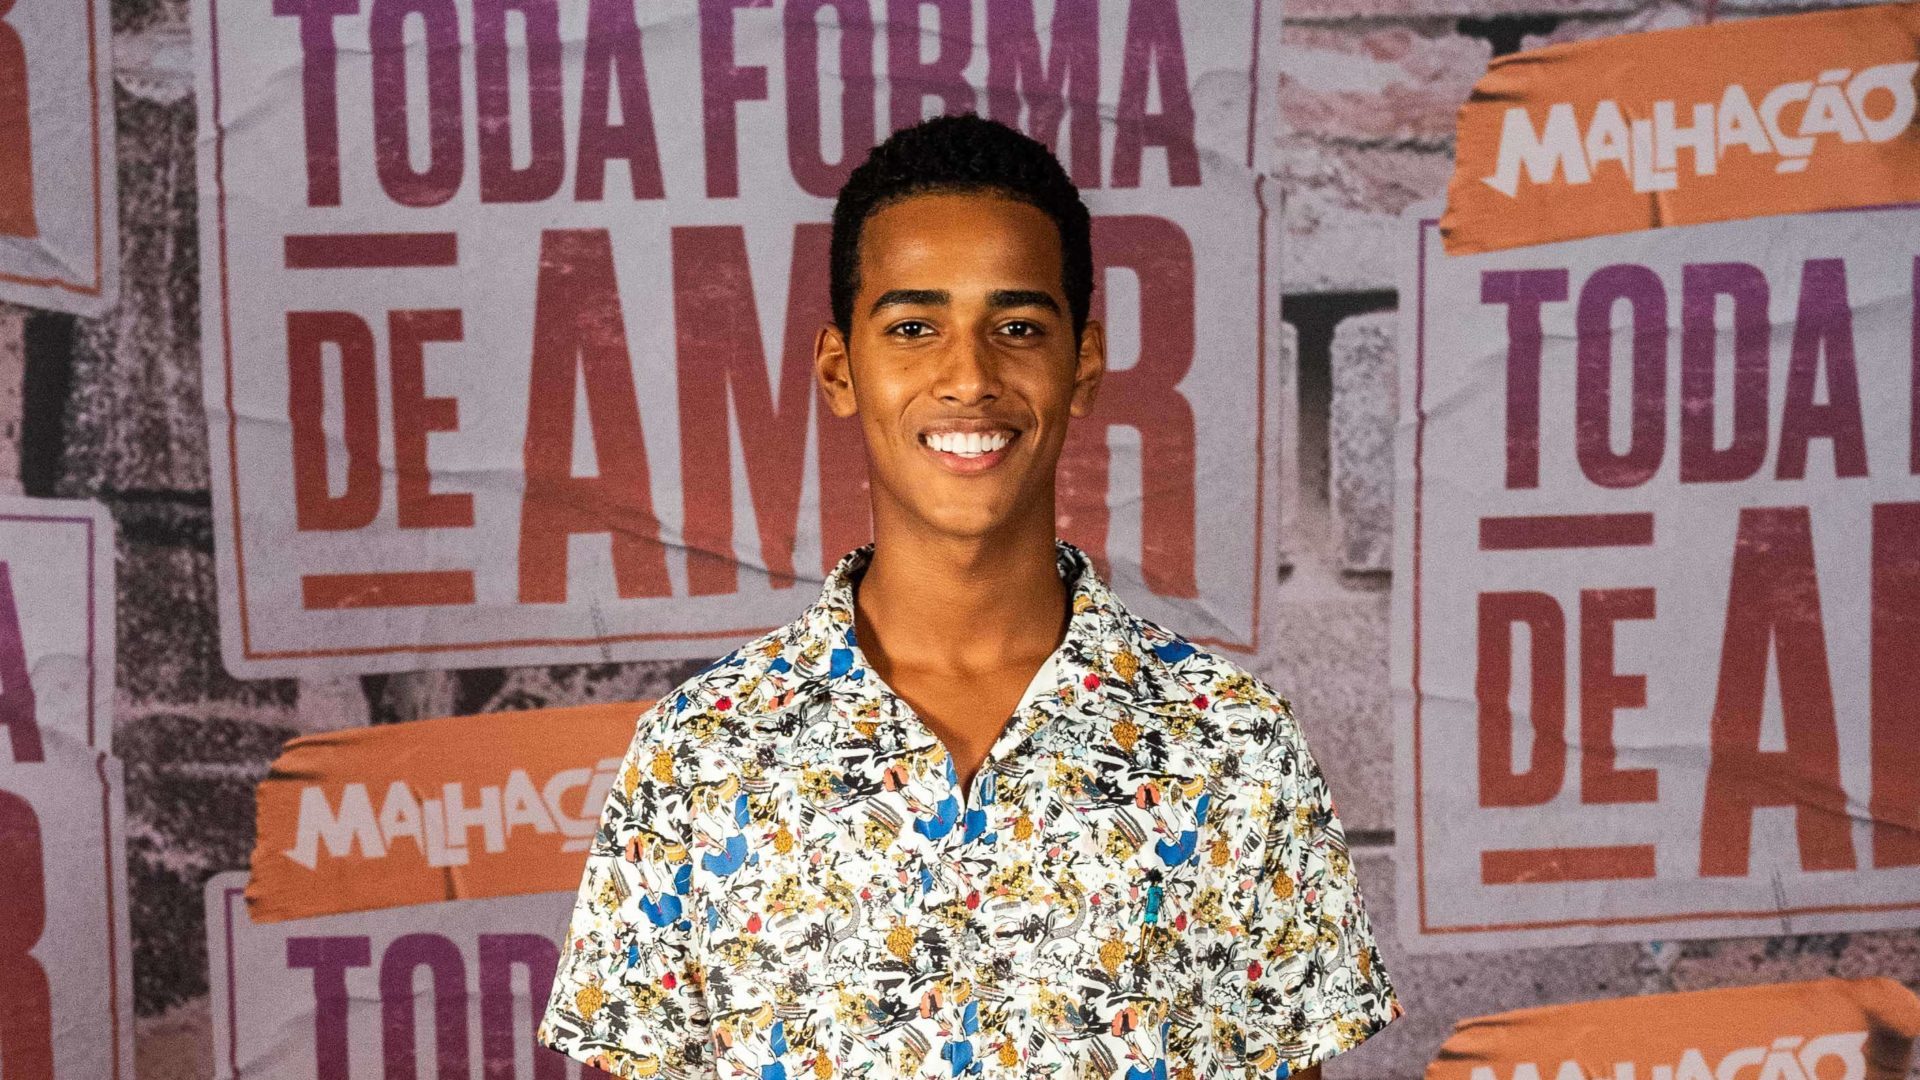 Joao Pedro Oliveira de Malhação: Toda Forma de Amar